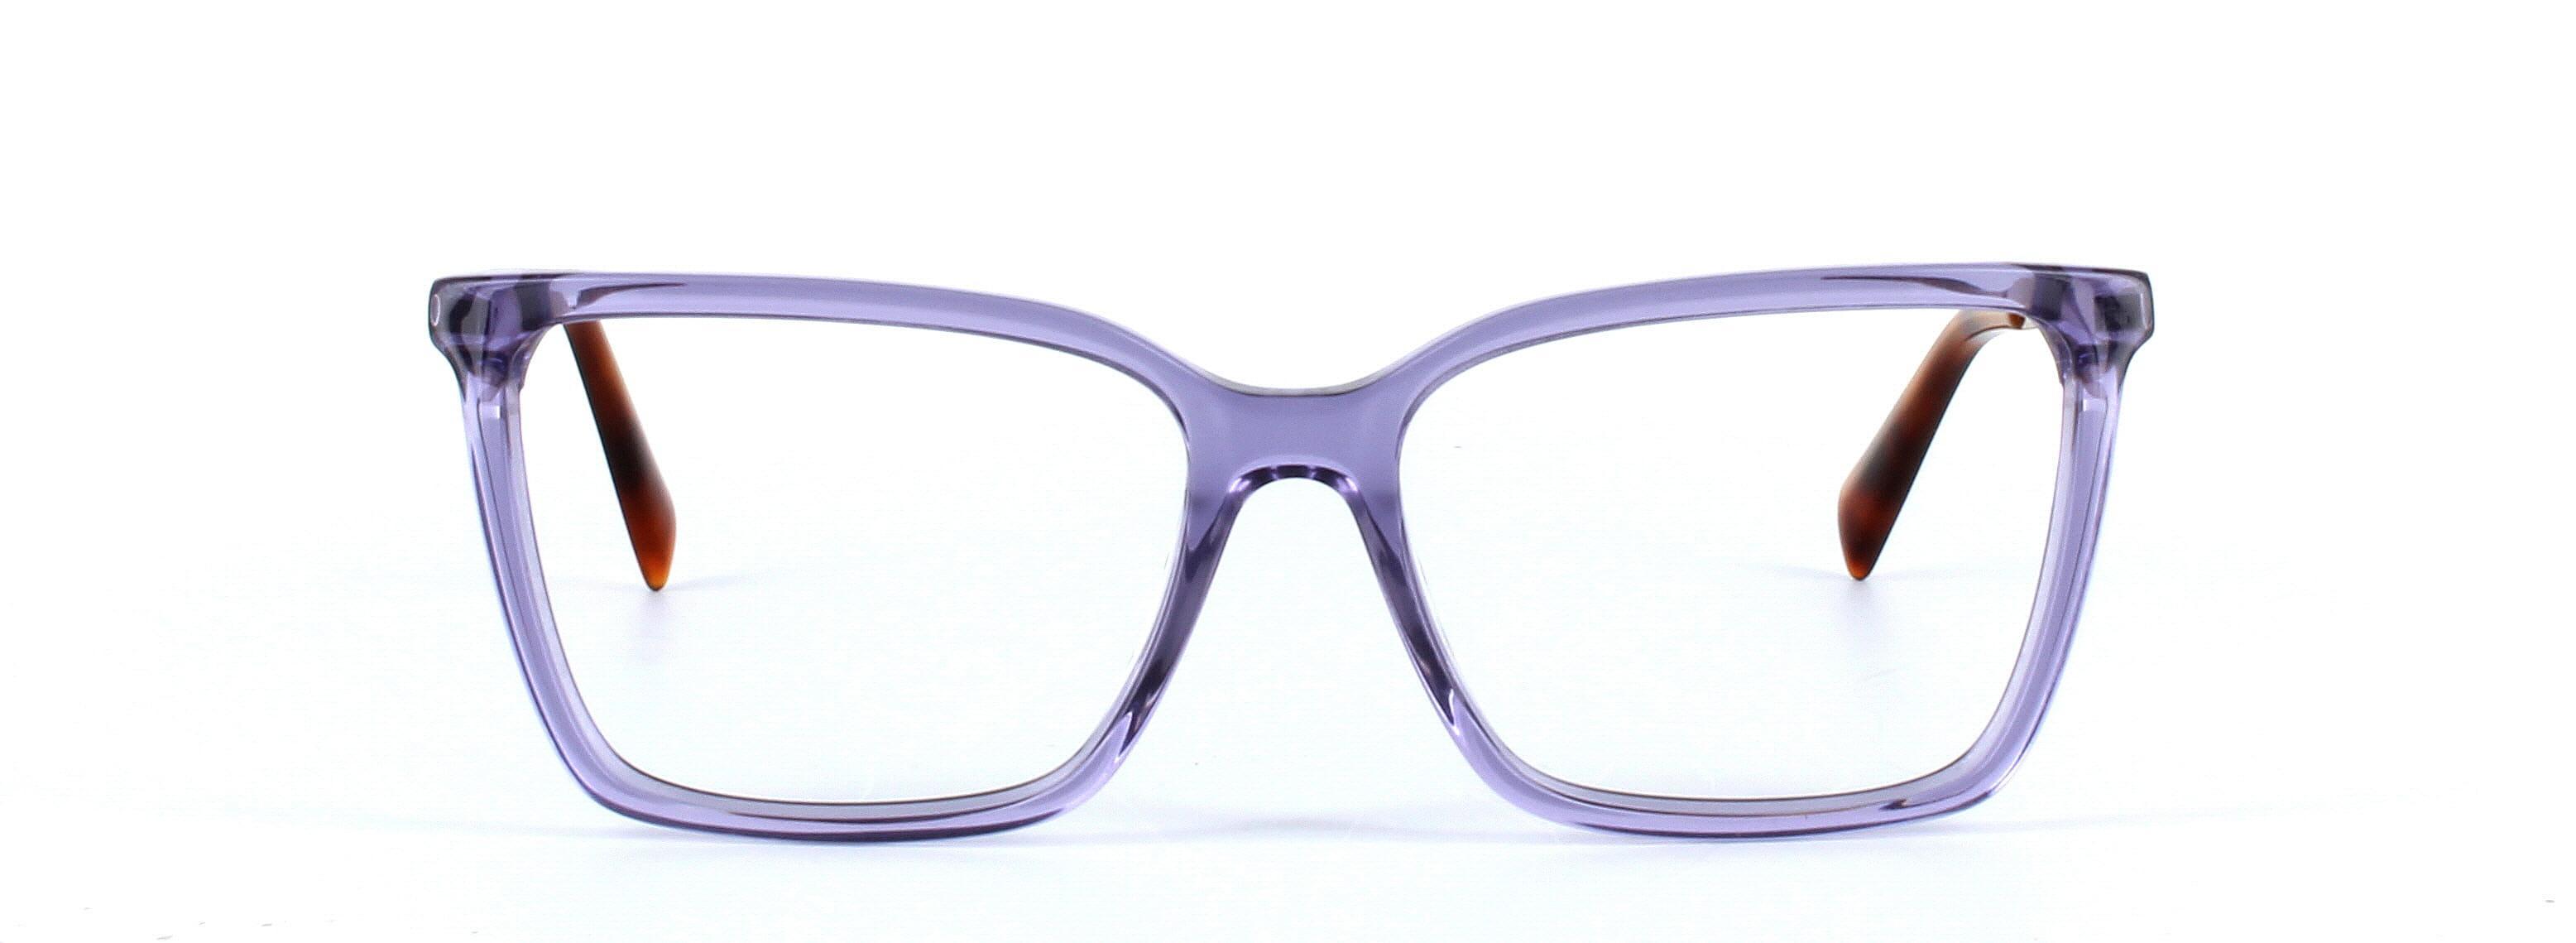 JUST CAVALLI (JC0813-078) Purple Full Rim Square Acetate Glasses - Image View 5